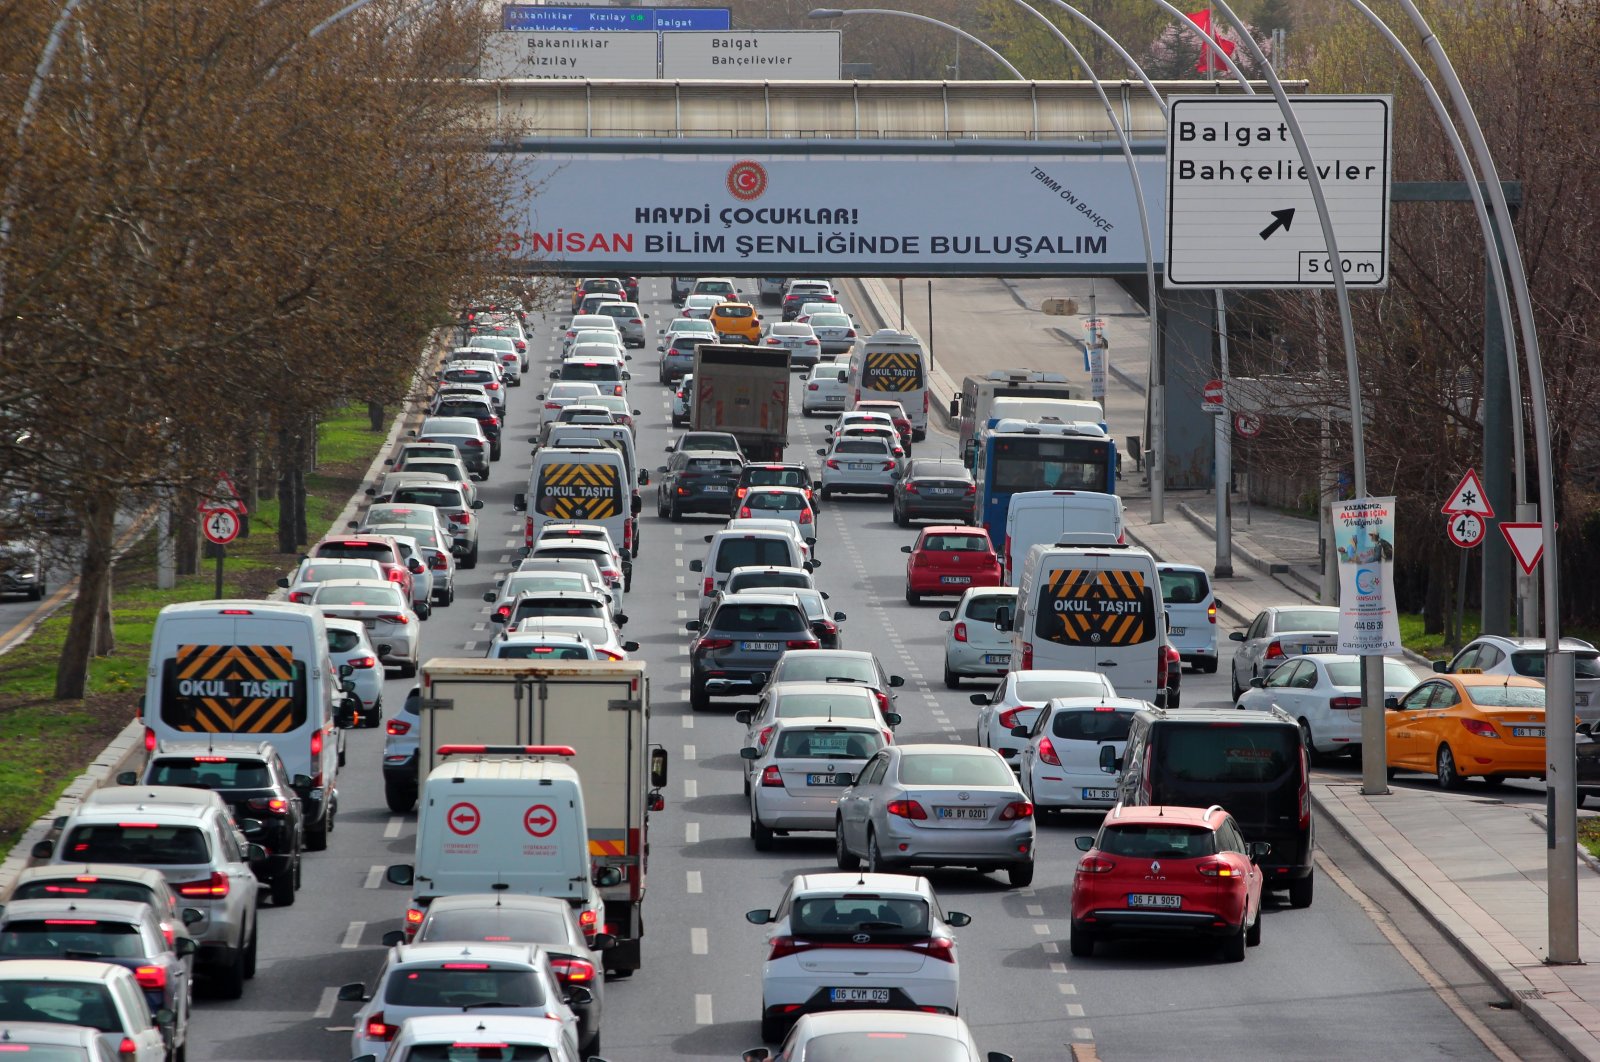 Industri pertahanan Turki luncurkan transportasi umum pintar